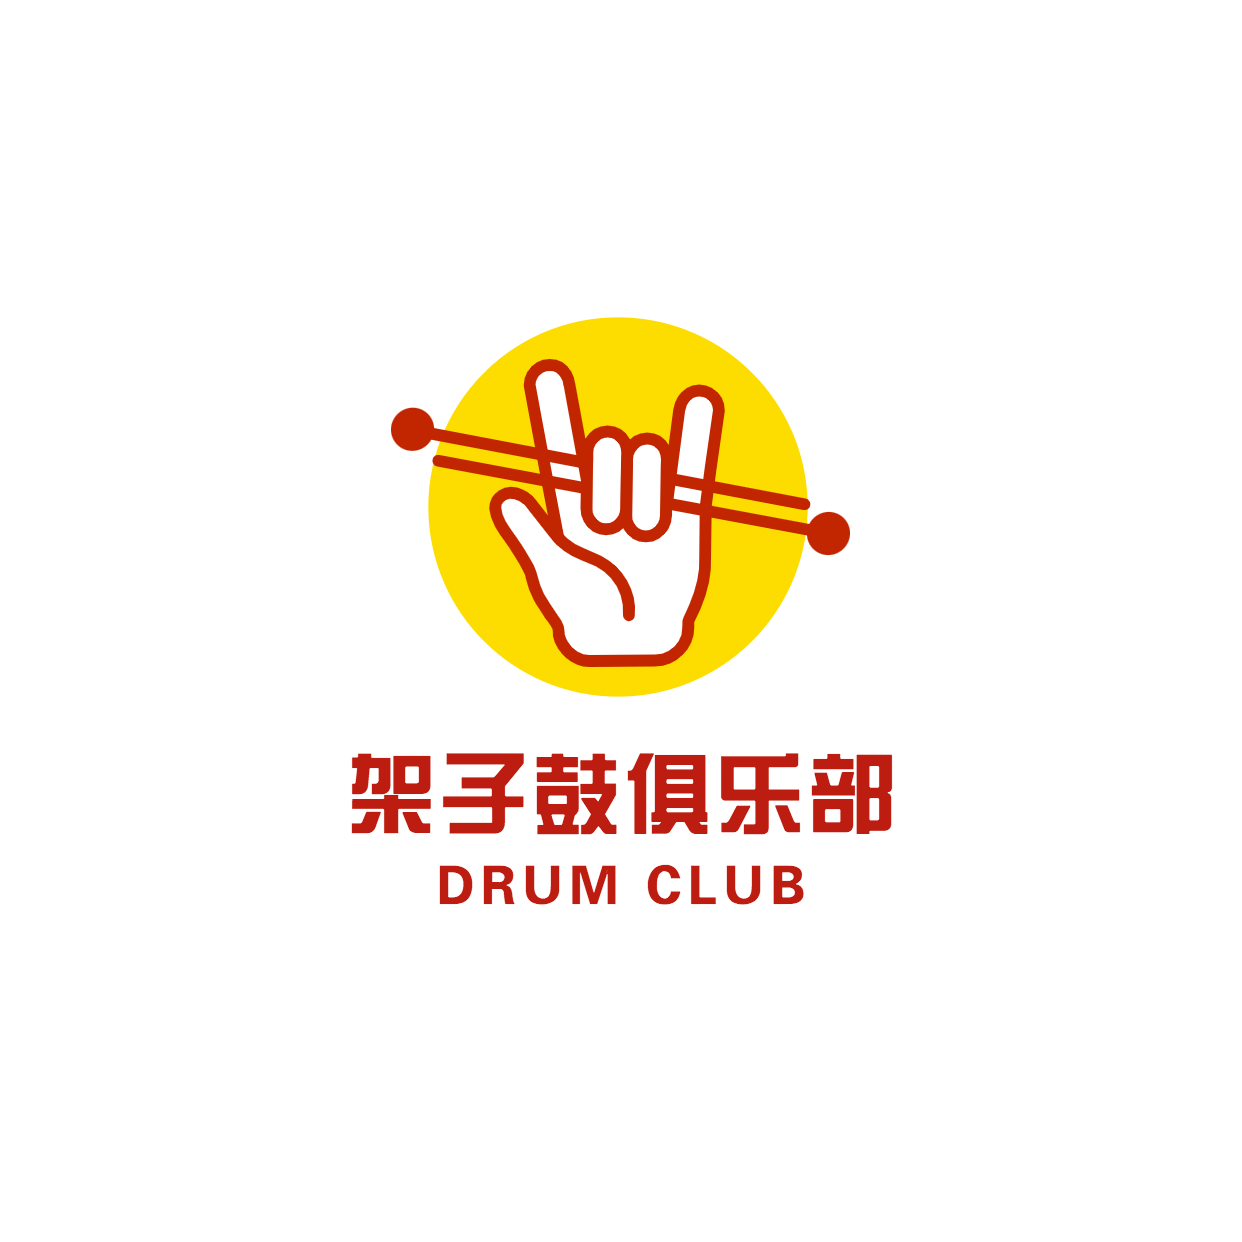 架子鼓俱乐部兴趣艺术头像logo预览效果